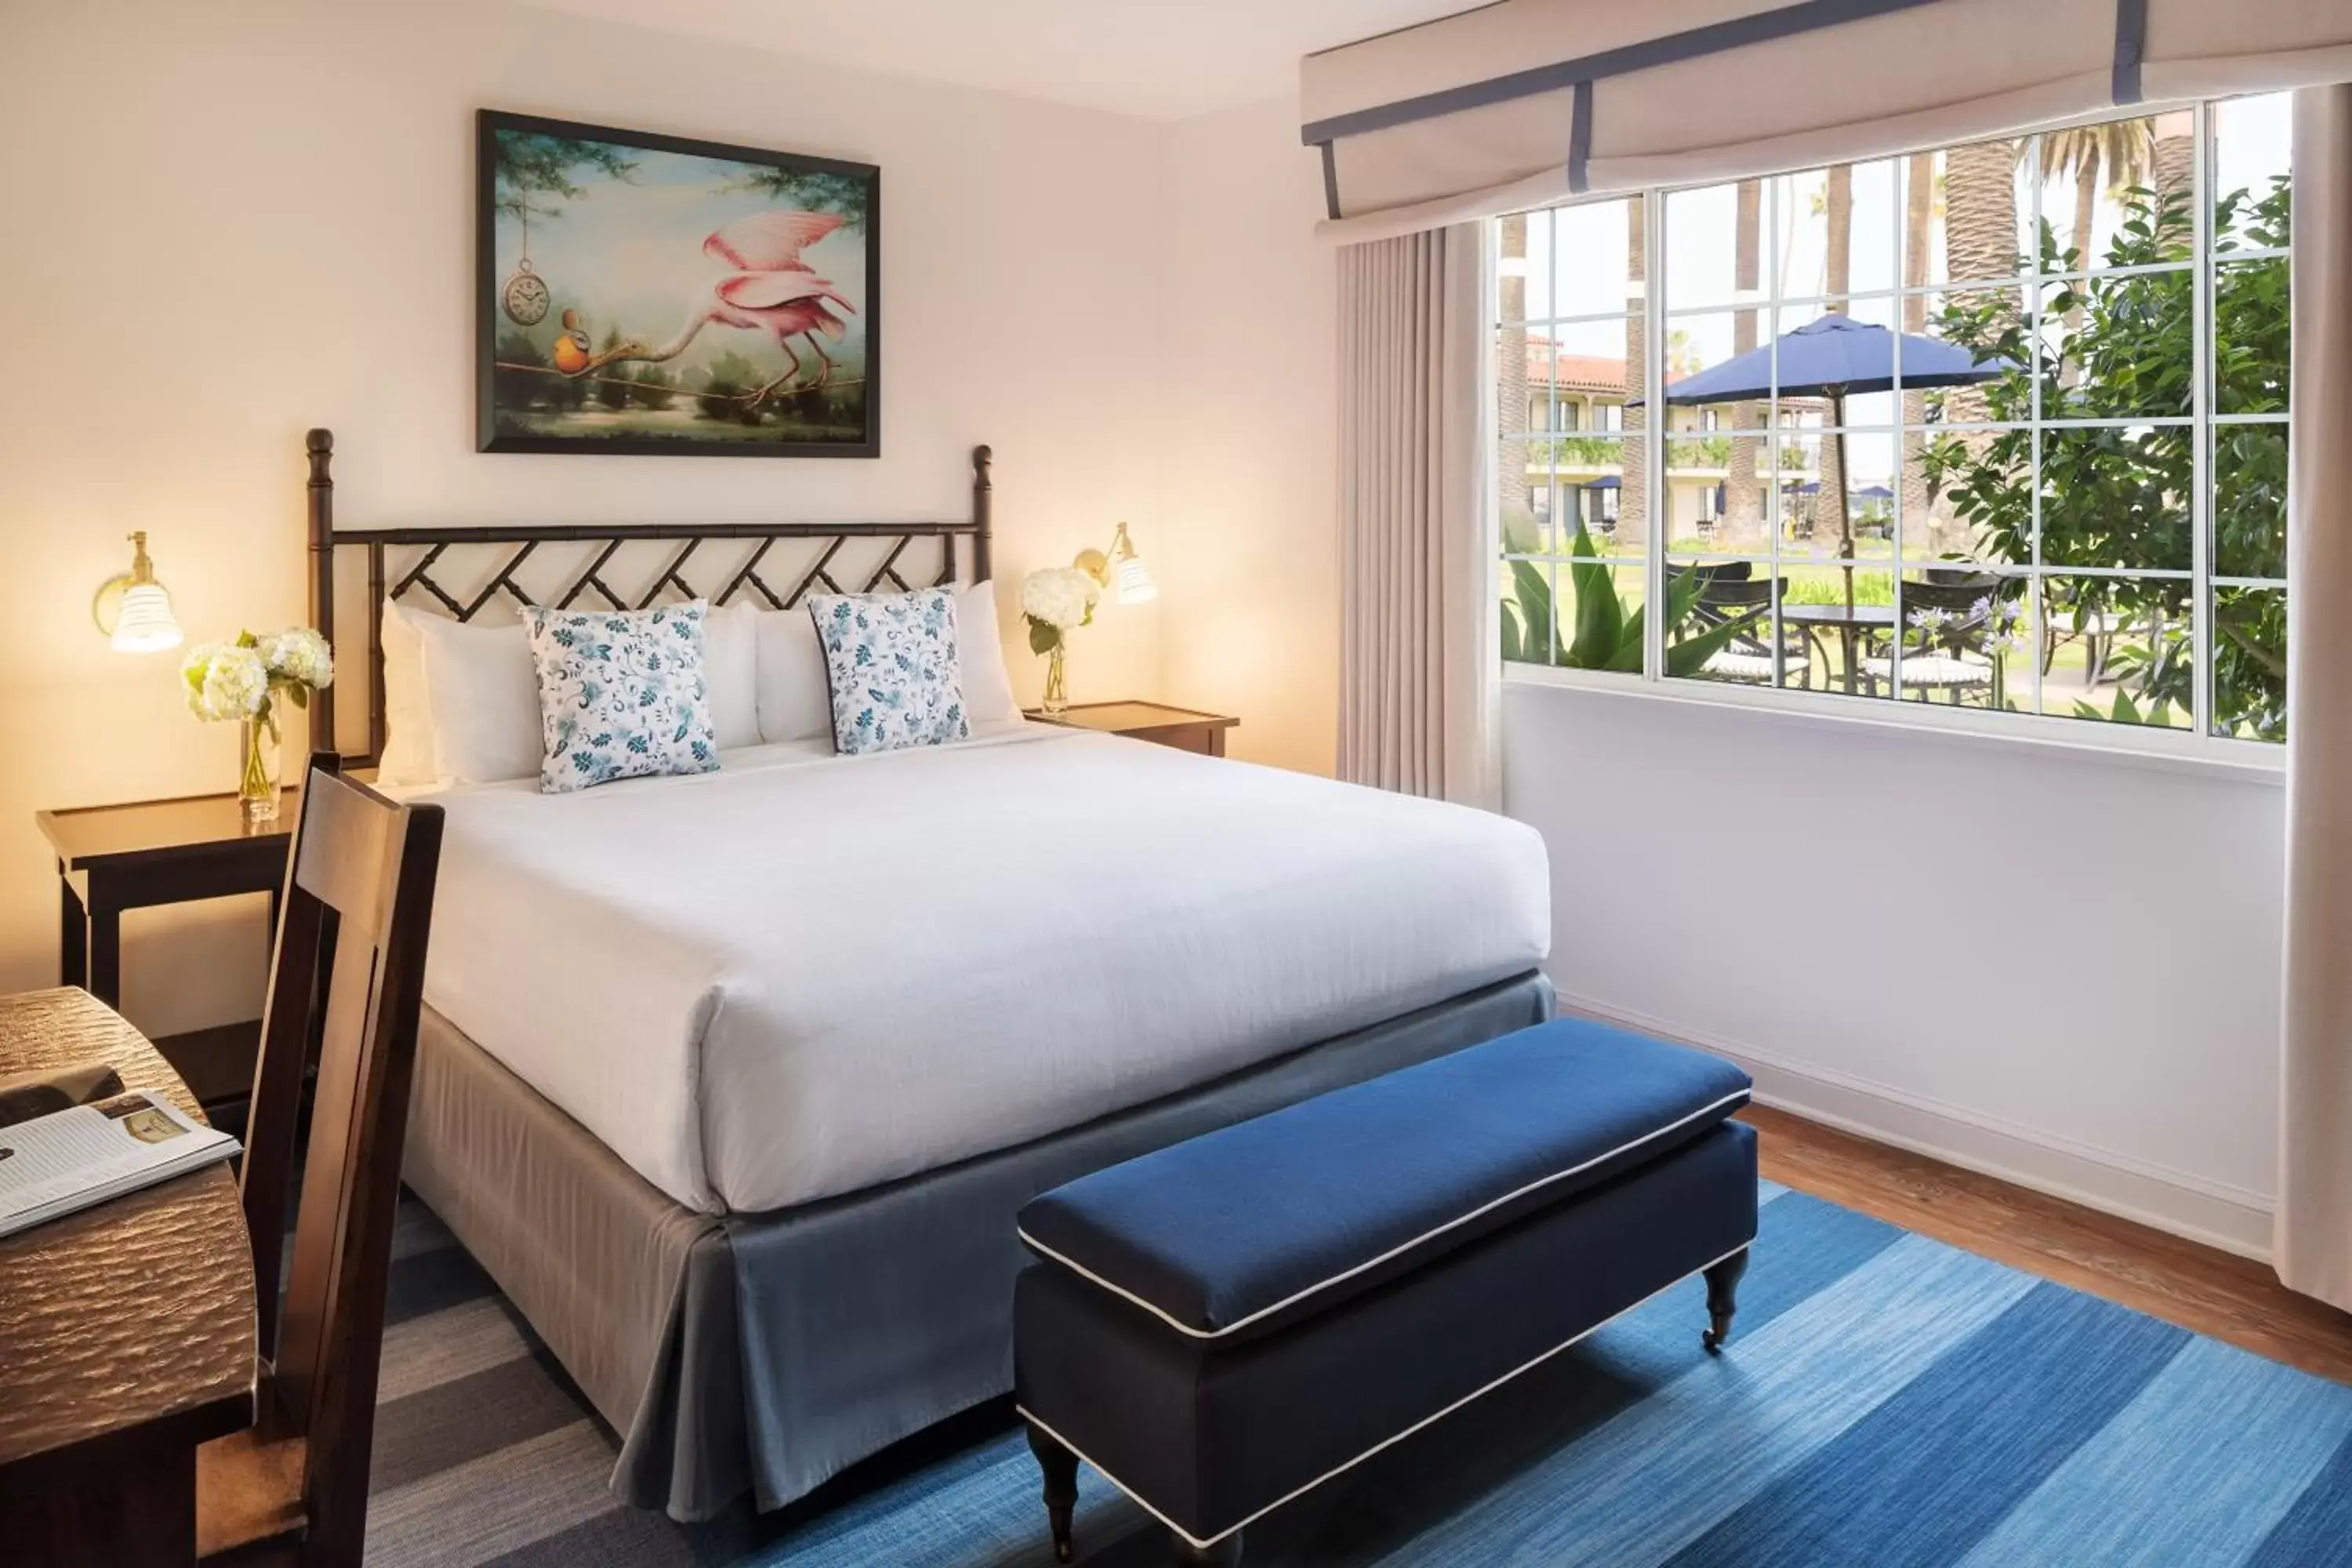 Bed, Room Photo in Hotel Milo Santa Barbara